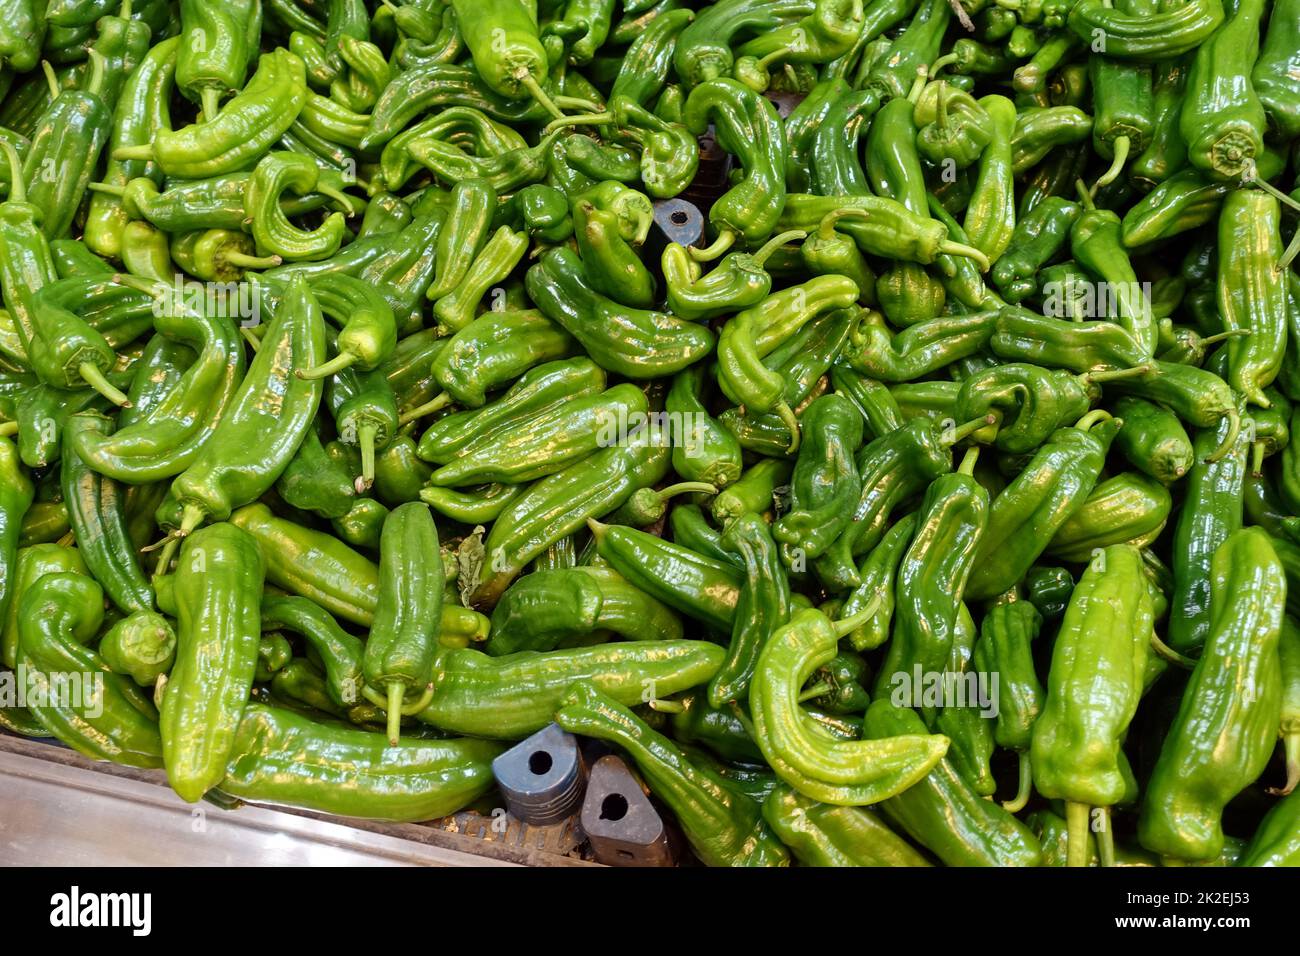 Reparto di alimentari, pepe verde fresco in vendita, grande quantità Foto Stock